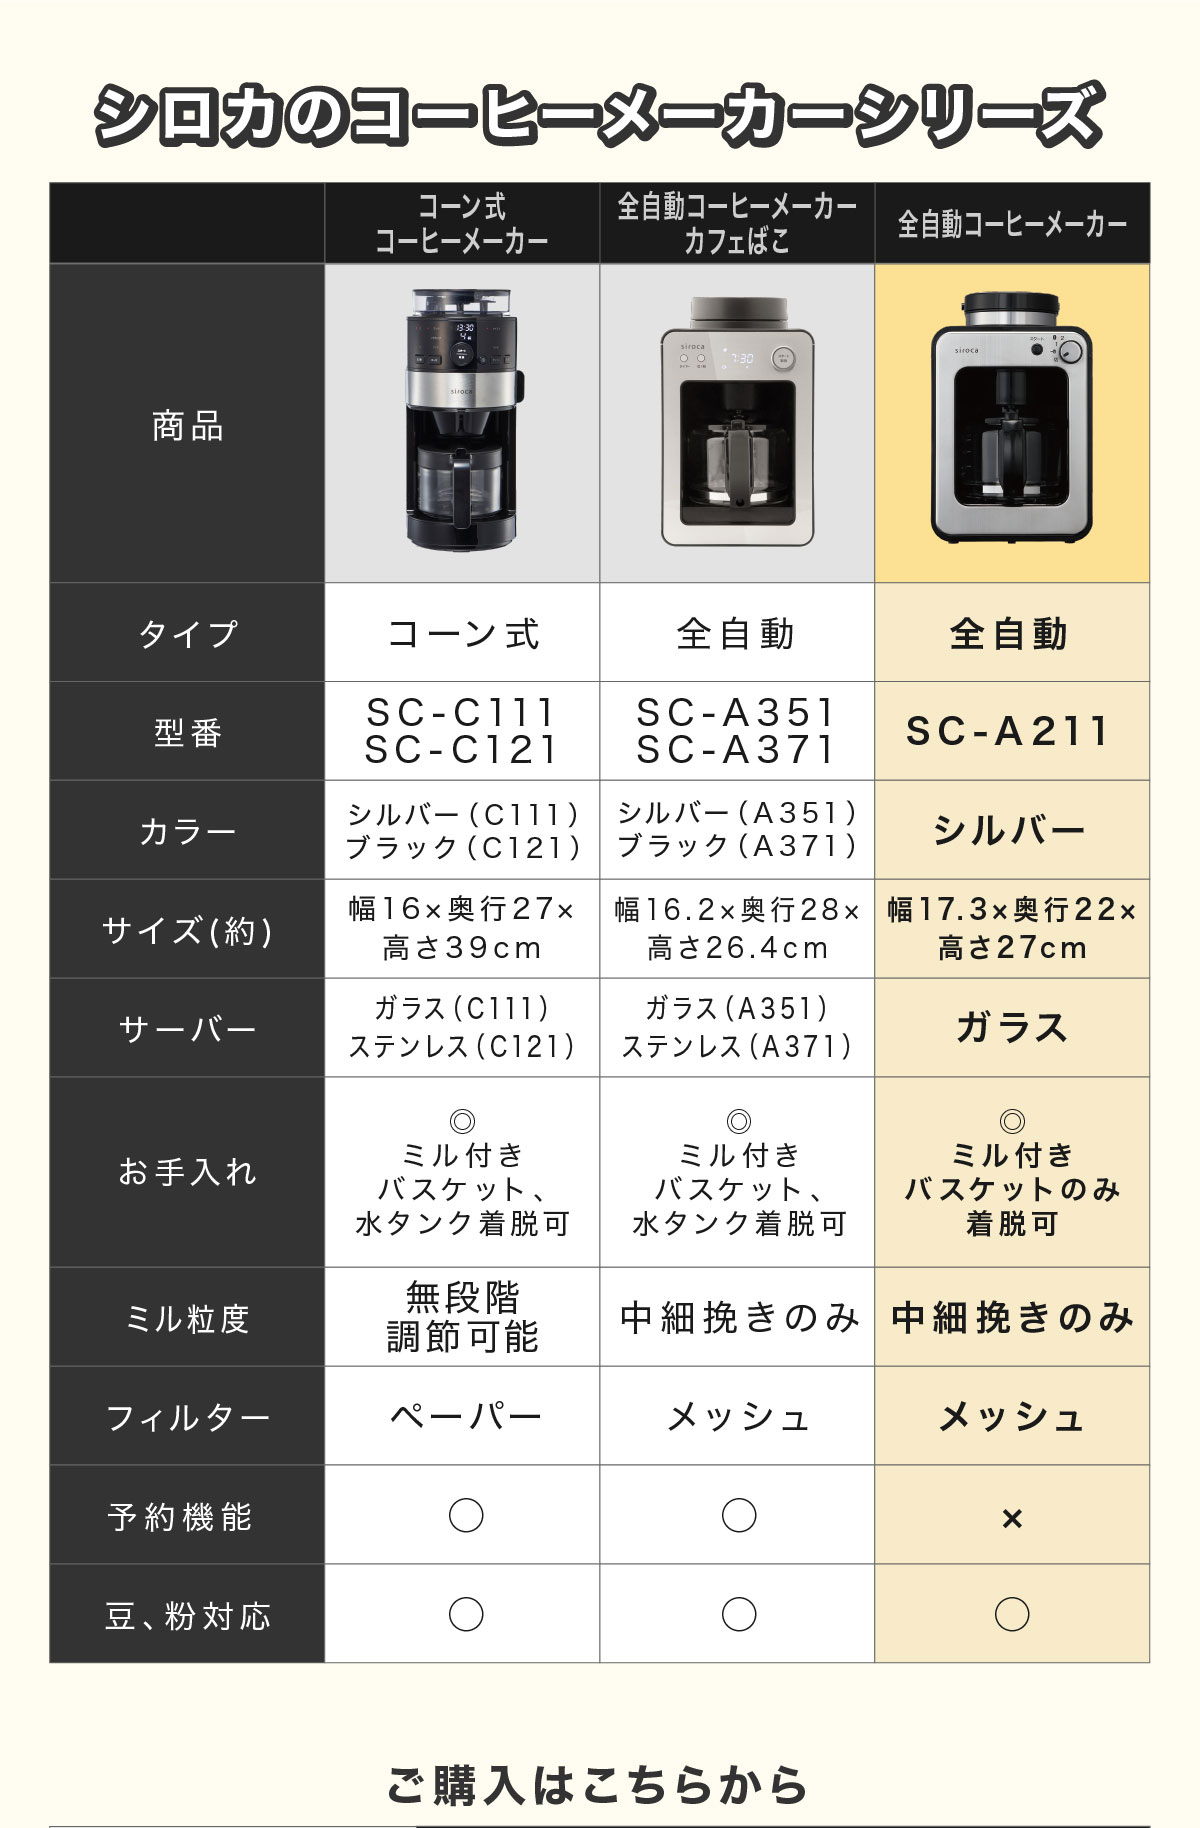 【楽天市場】【ポイントUP対象商品】【シロカ公式】siroca 全自動コーヒーメーカー SC-A211 ステンレスシルバー | コーヒー